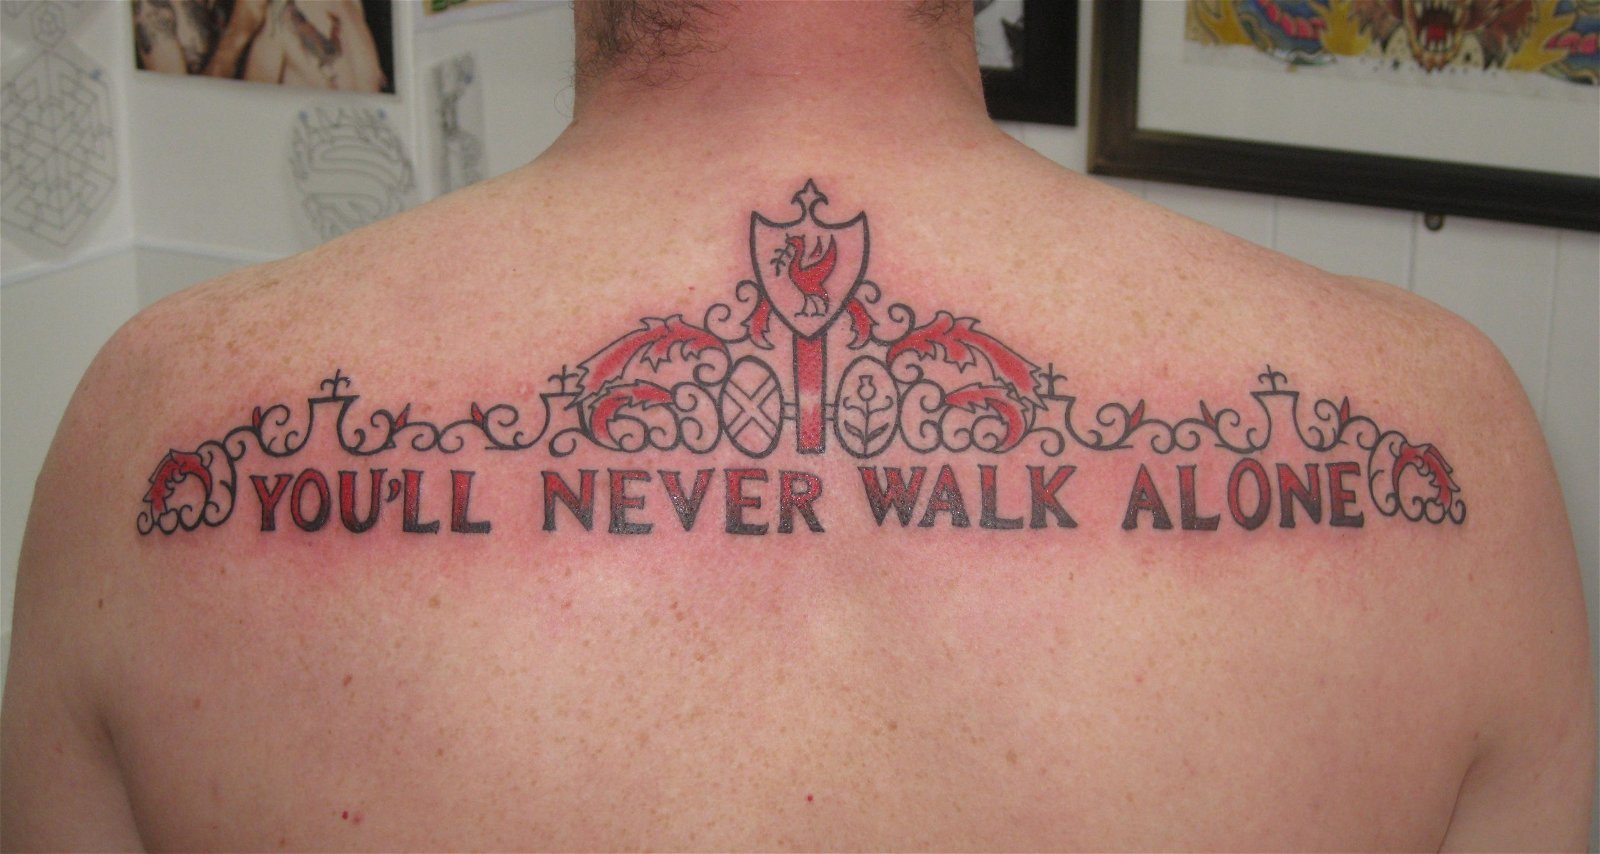 Liverpool FC tattoos